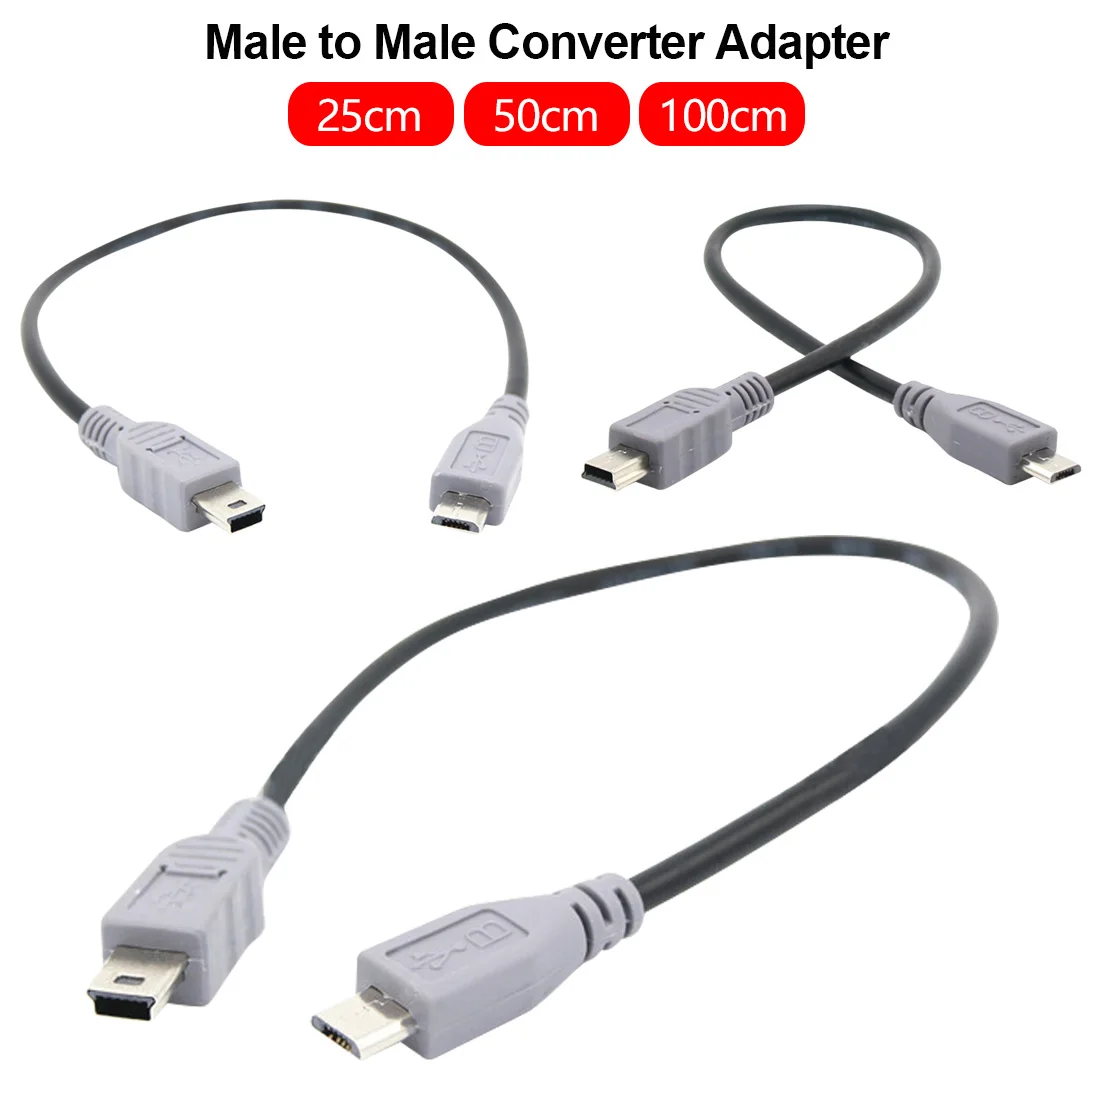 25 см/50 см/1 м для микро-флеш-накопителя USB мини USB OTG кабель со штыревыми соединителями на обоих концах для подключения конвертер адаптер для зарядки и синхронизации данных Mini 5-контактный USB кабель-удлинитель